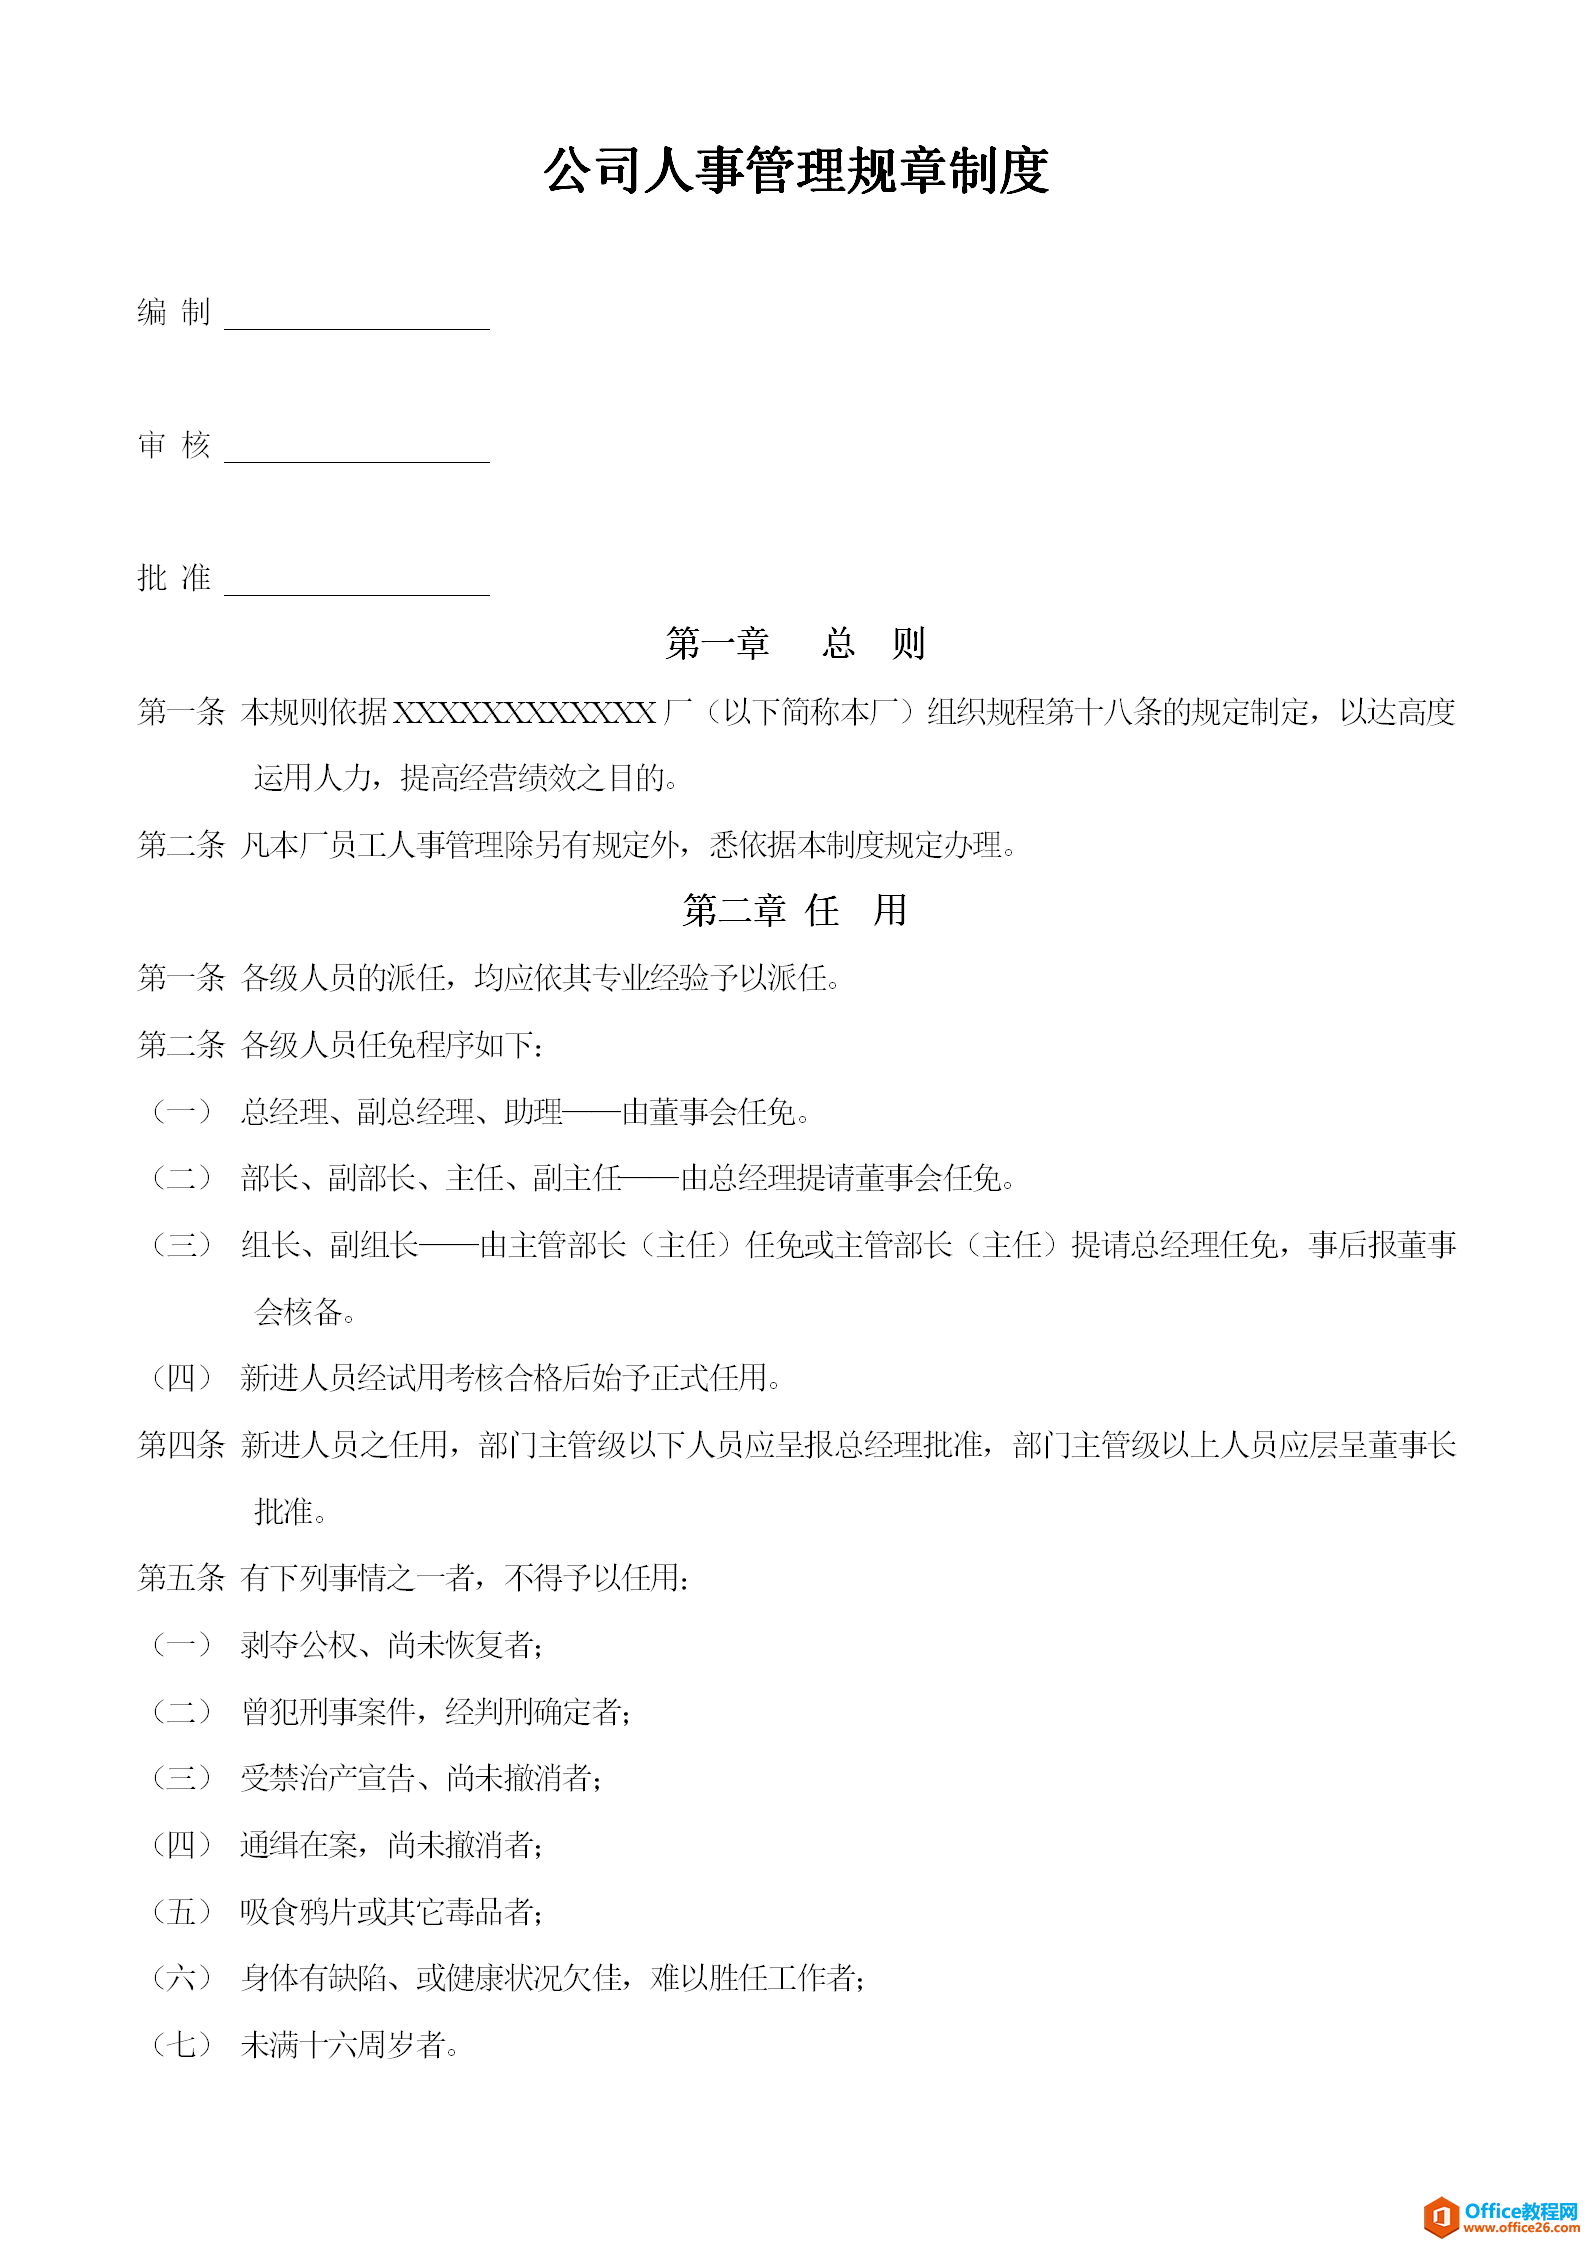 公司人事管理规章制度范例-word模板-免费下载